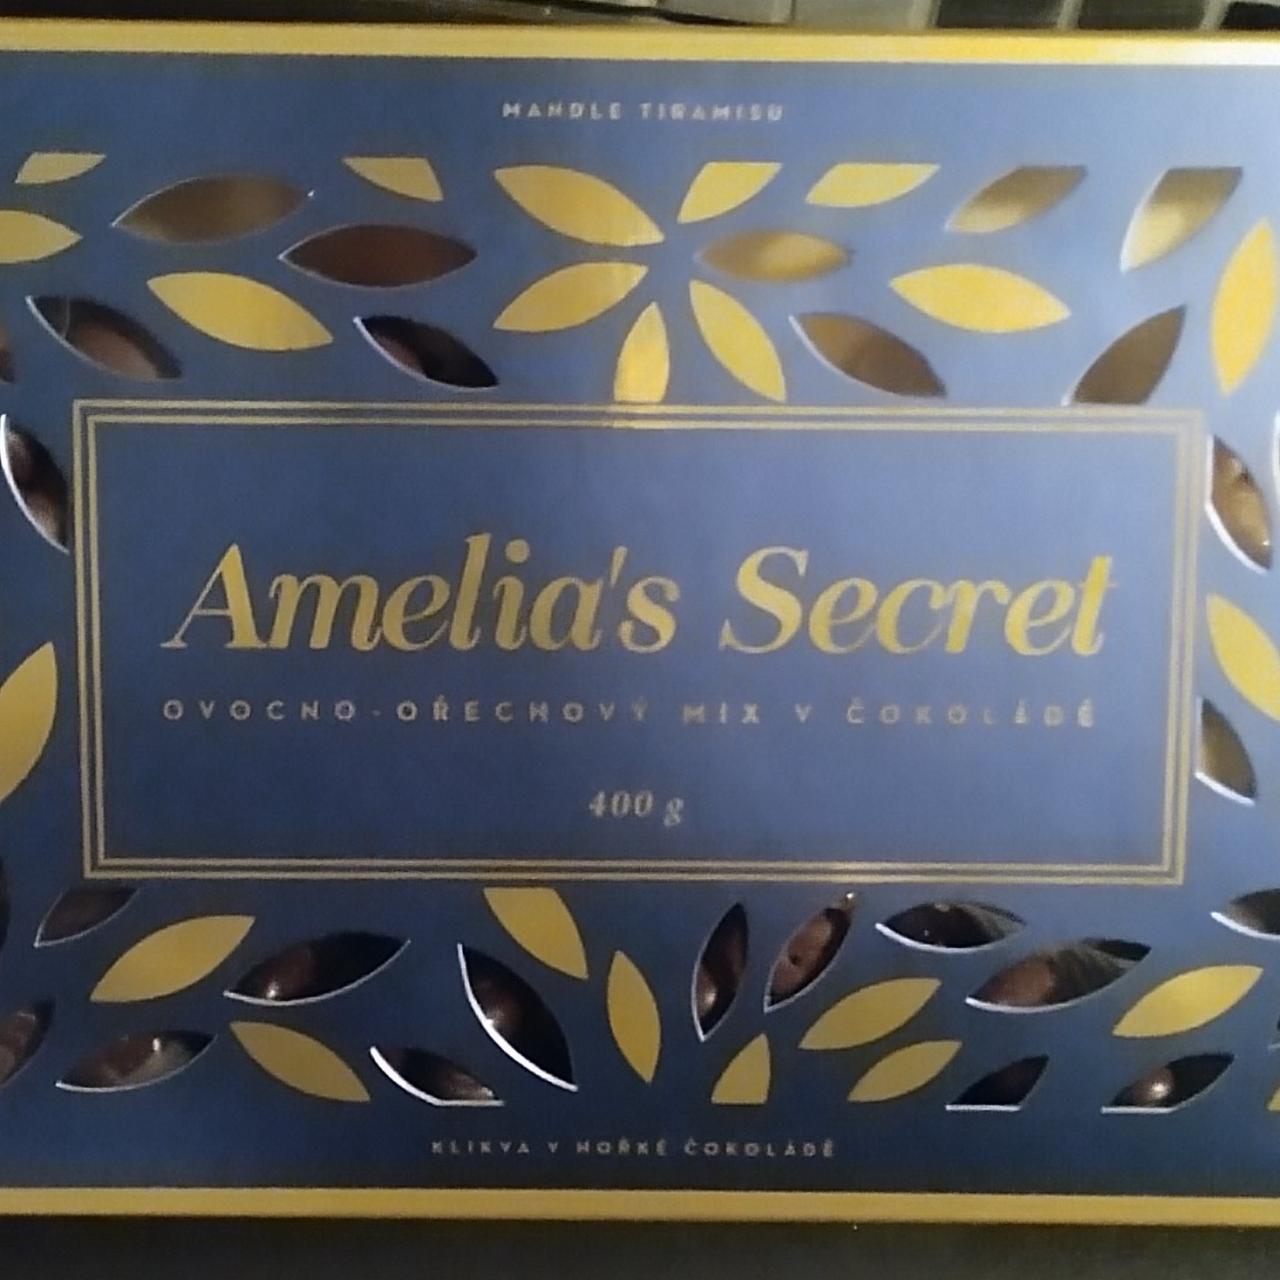 Fotografie - Amelia's Secret ovocno-ořechový mix v čokoládě